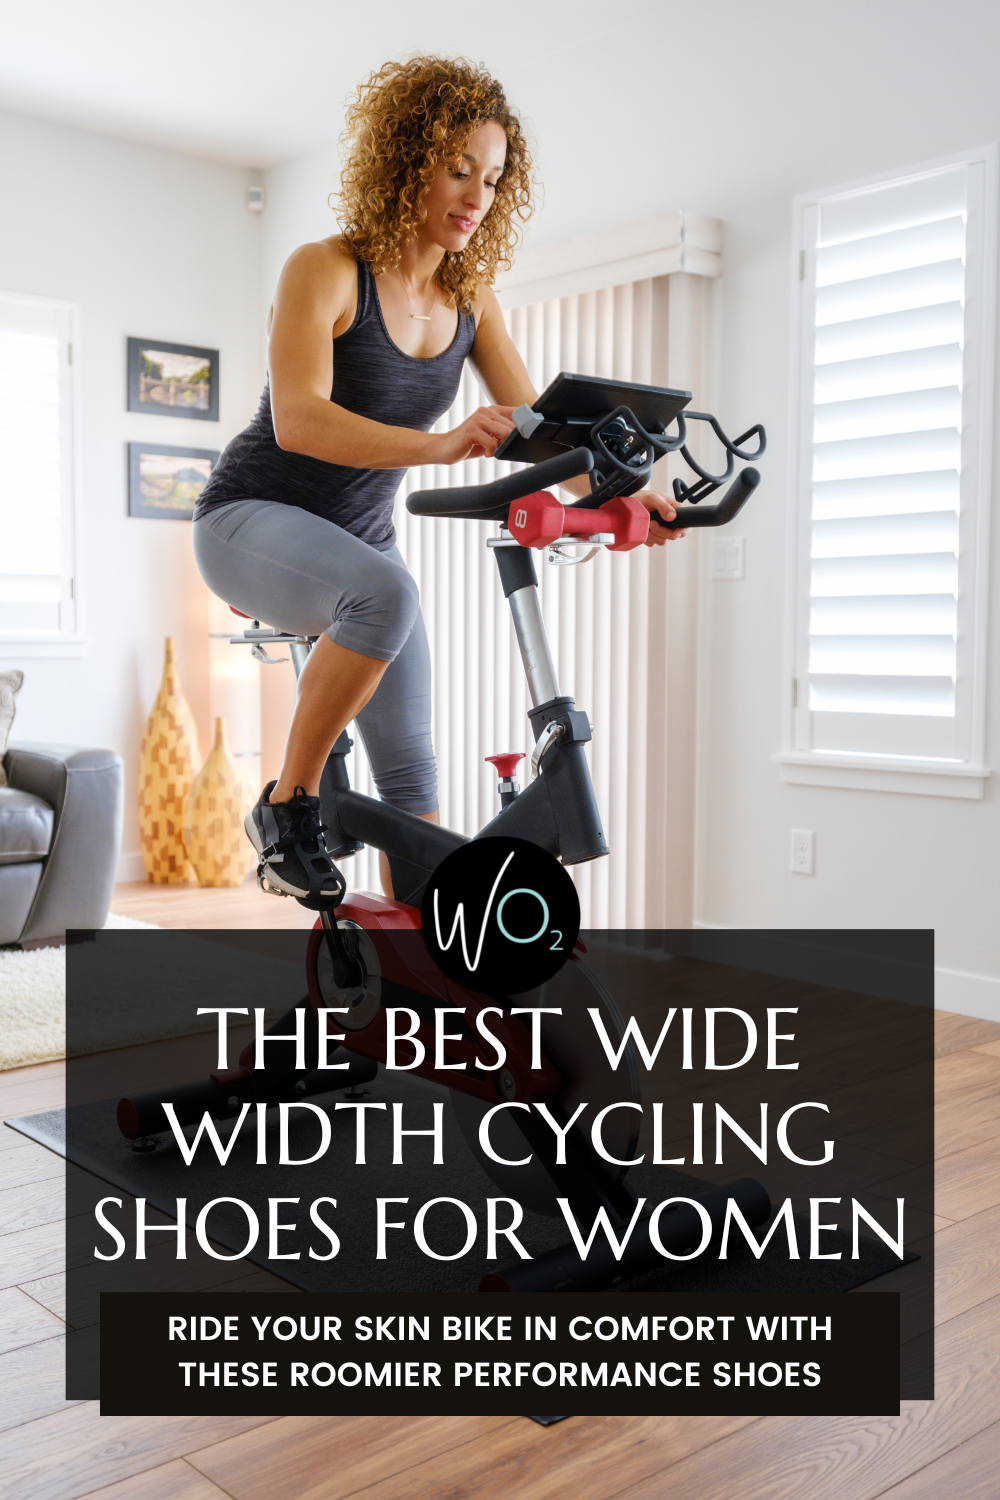 The 7 Best Wide Width Cycling Shoes for Women - Wardrobe Oxygen